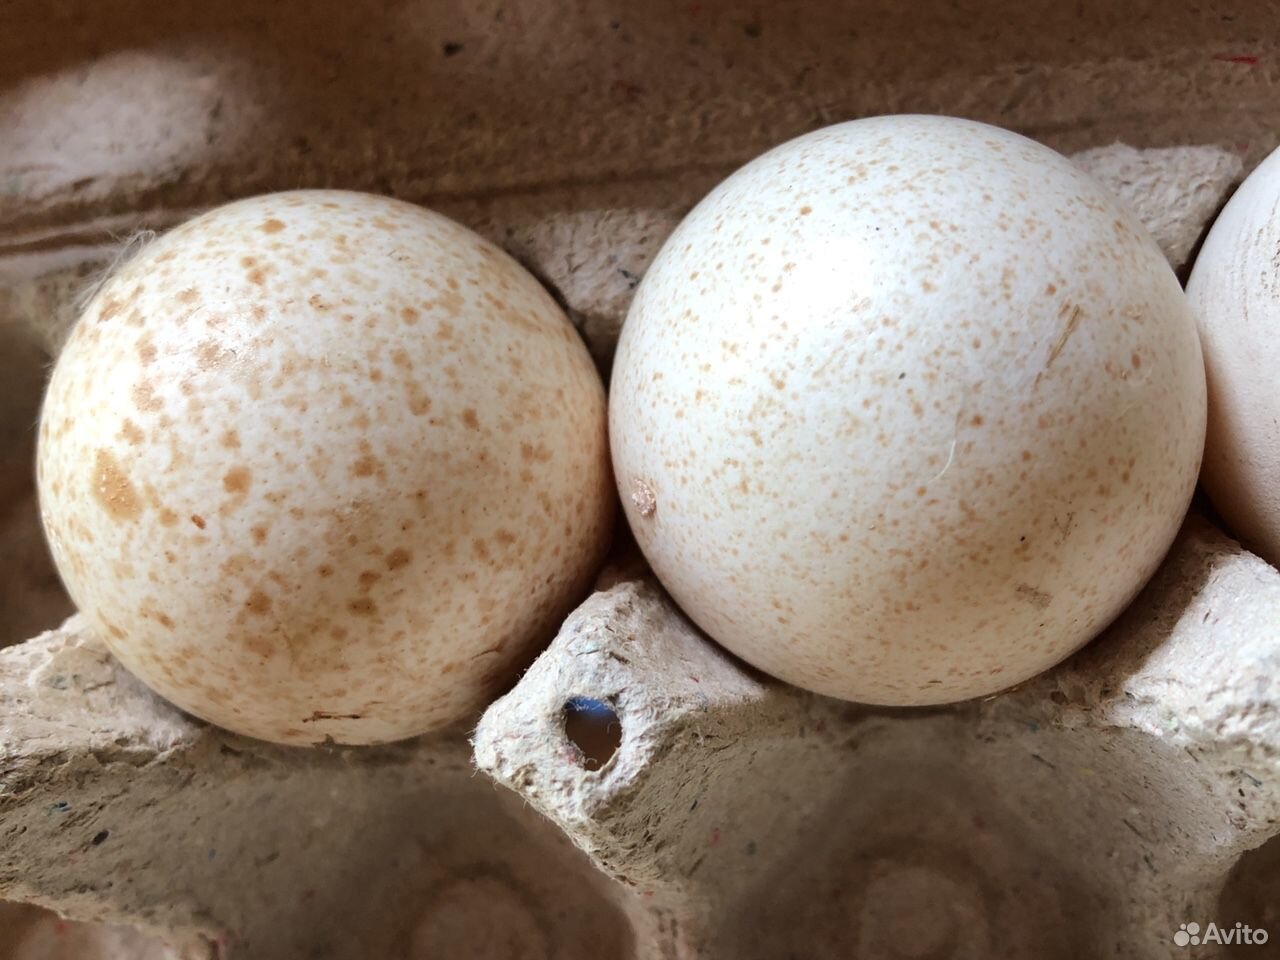 Купить индюшиные яйца для инкубатора. Яйца индейки. Яйцо индейки фото. Яйца индейки в гнезде.